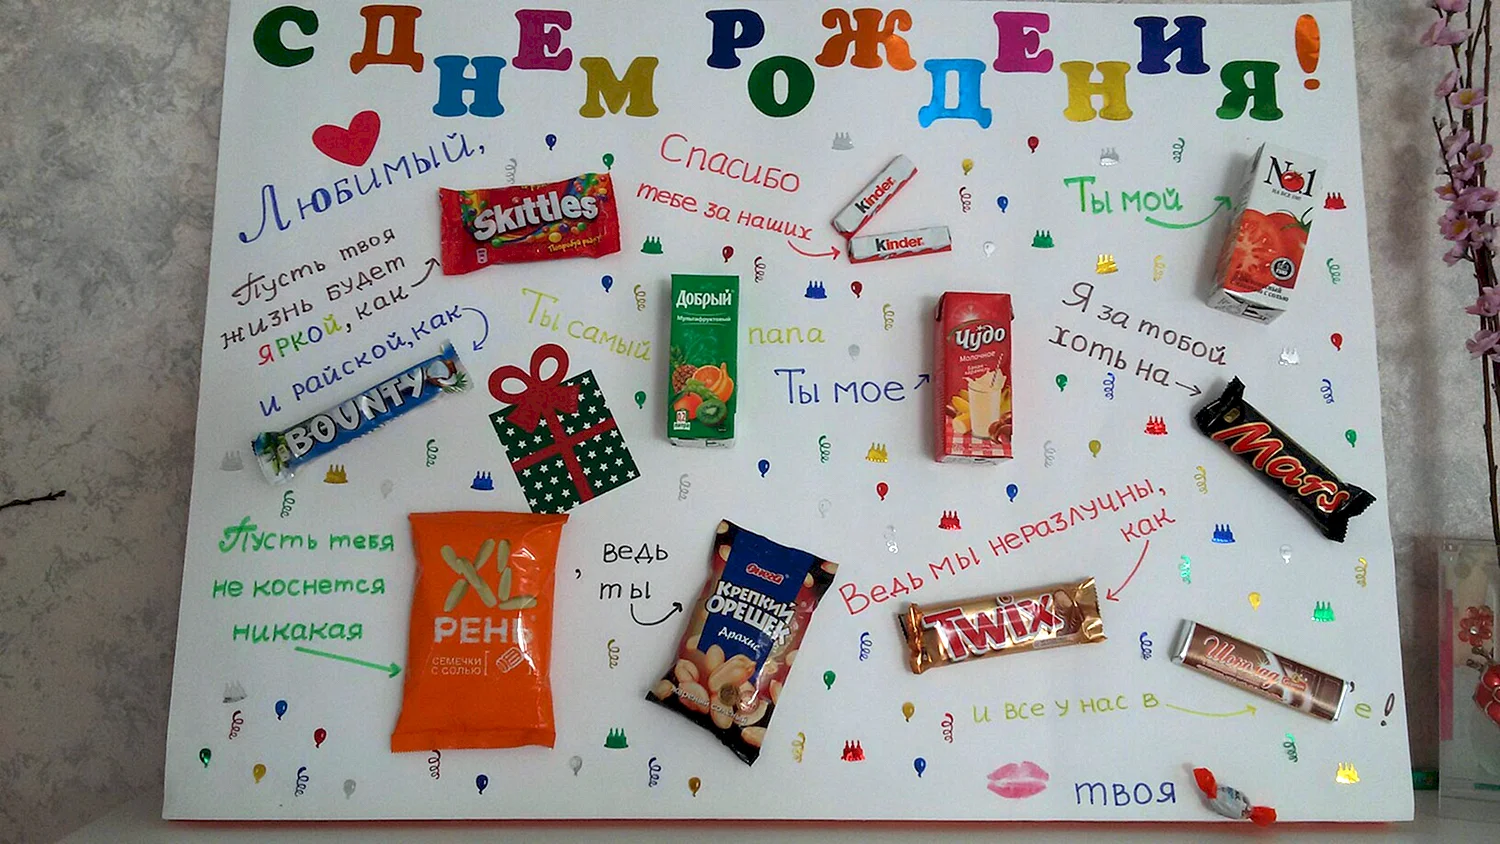 Поздравление на плакате со сладостями